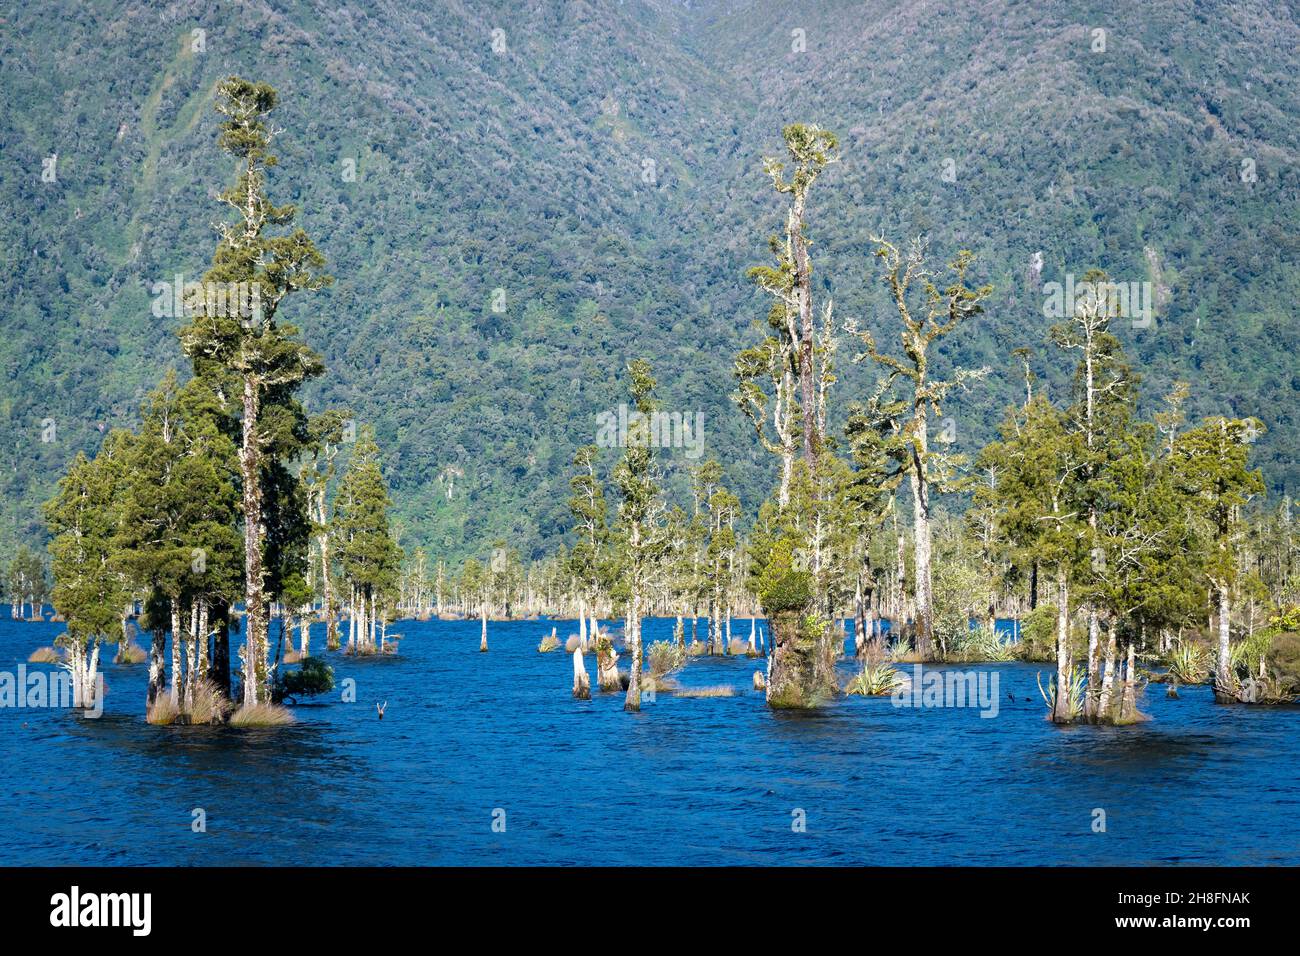 Kahikatea trees (Dacrycarpus dacrydioides) growing in Lake Brunner, South Island, New Zealand Stock Photo